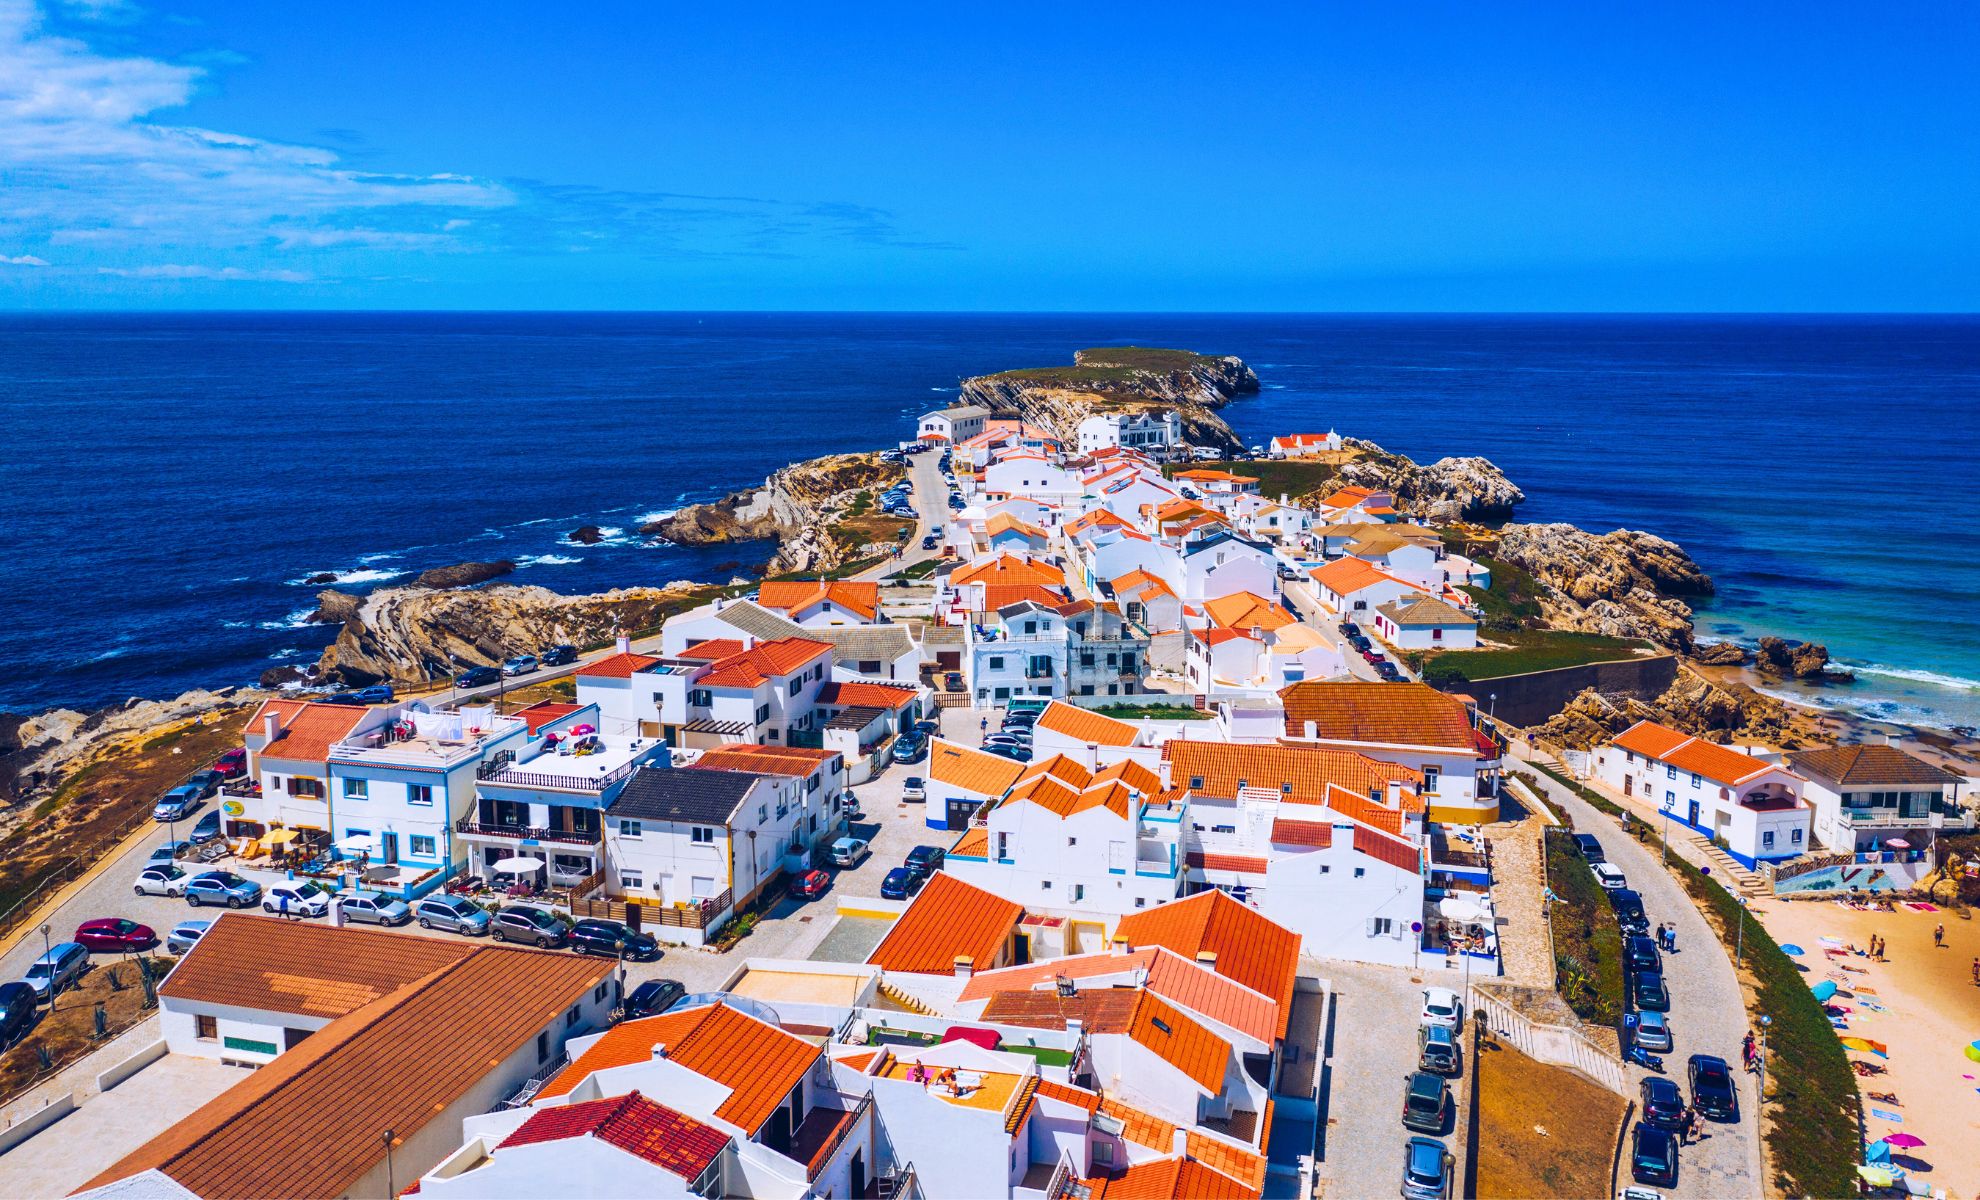 Le village de Baleal, Portugal